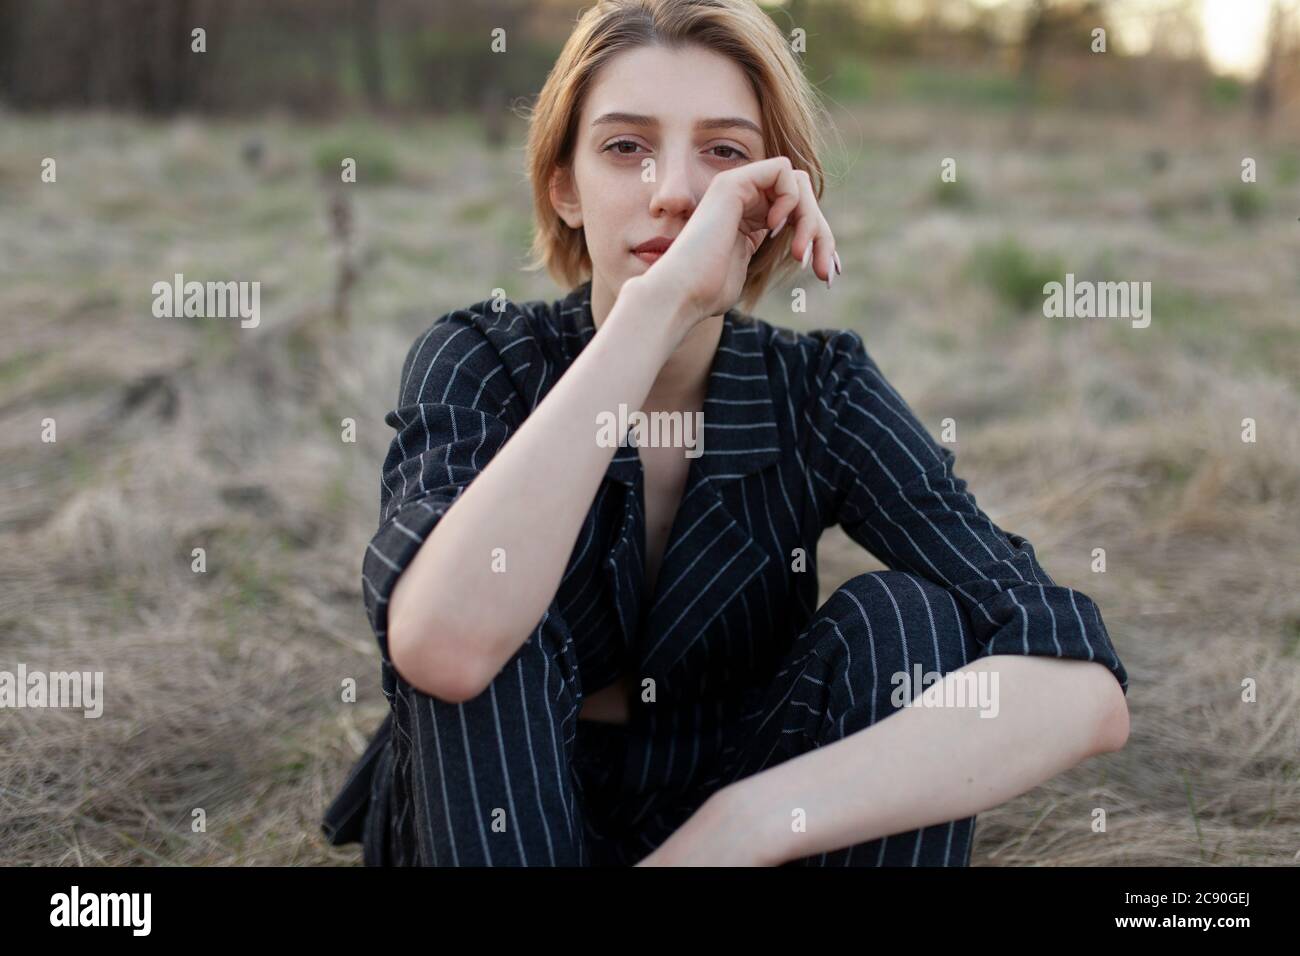 Russie, Omsk, Portrait de la jeune femme assise dans l'herbe Banque D'Images